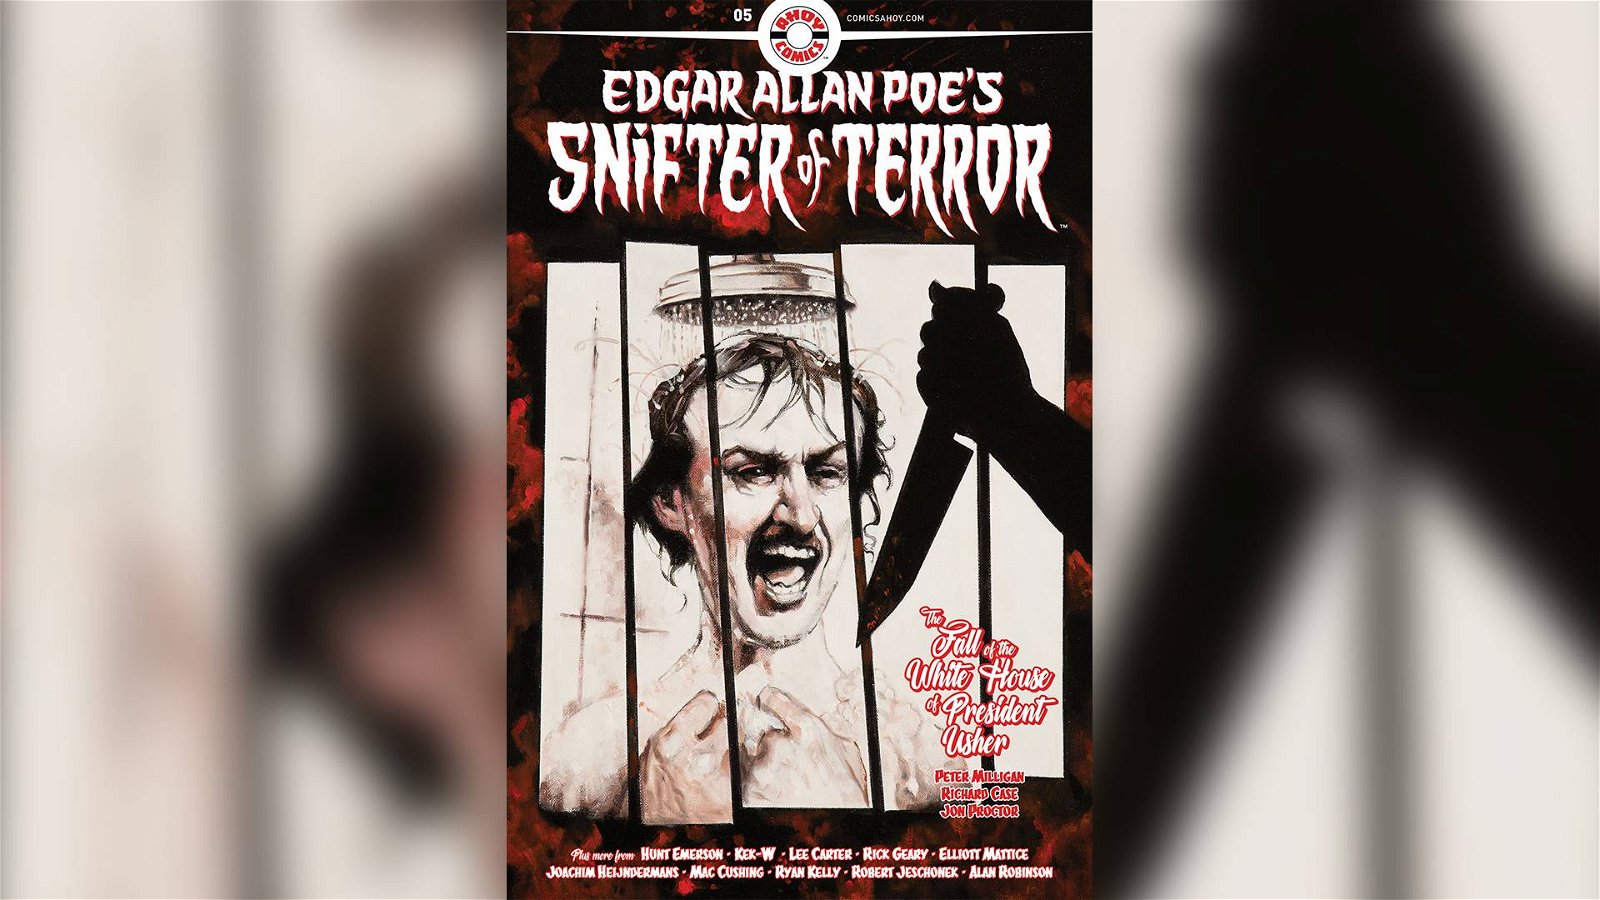 Immagine di Edgar Allan Poe nella cultura pop: le origini dell'orrore